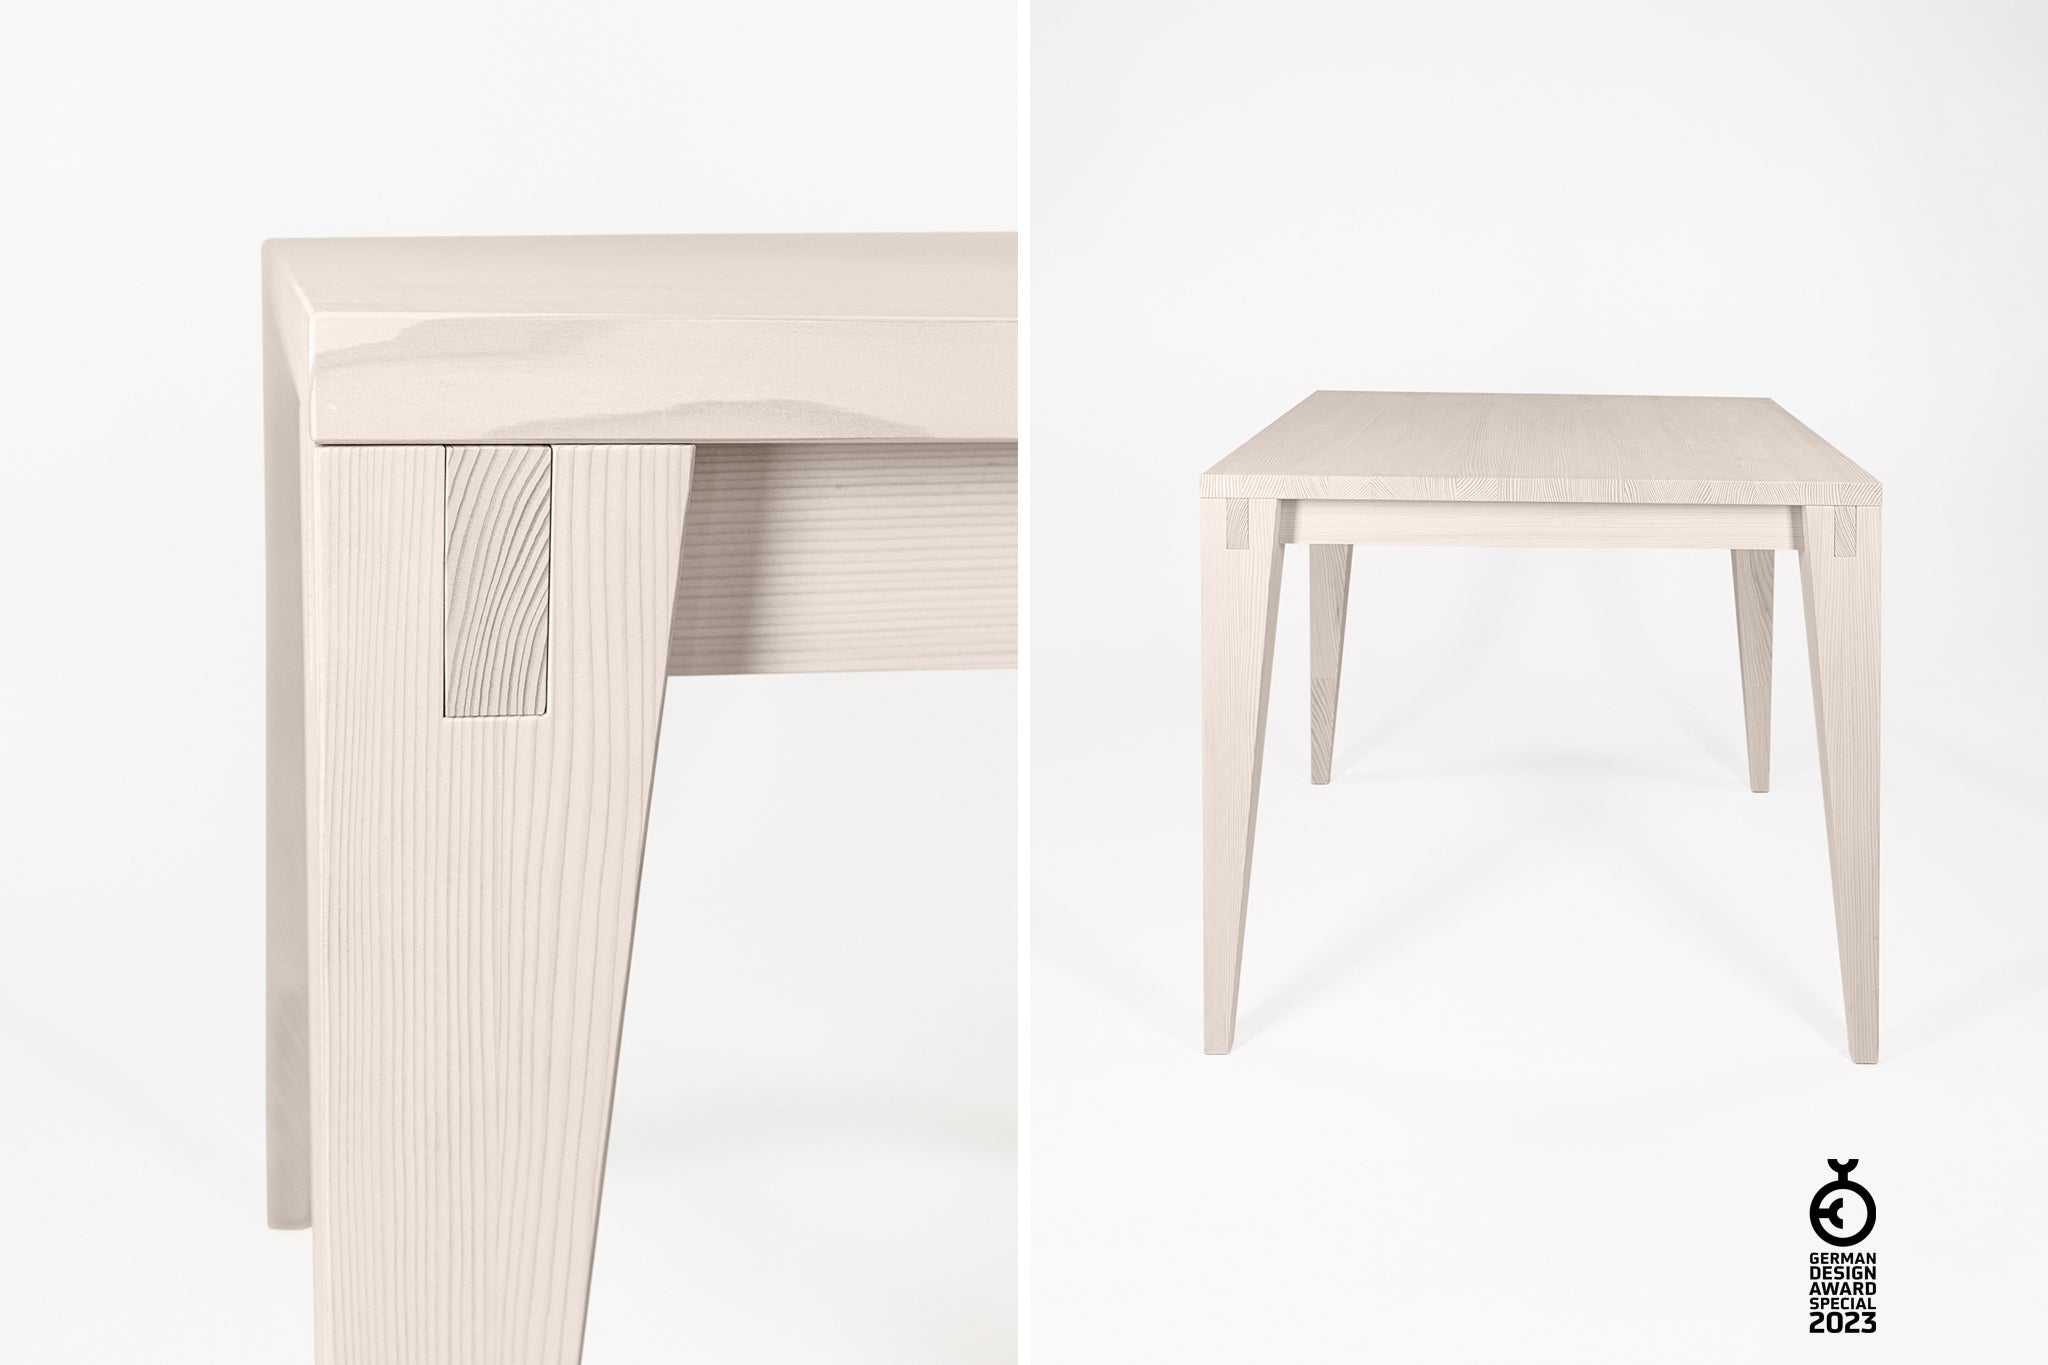 Tisch aus Weisstanne mit handwerklichen Verbindungen und Details. Ausgezeichnet mit dem German design Award und Winner bei den Iconic Awards